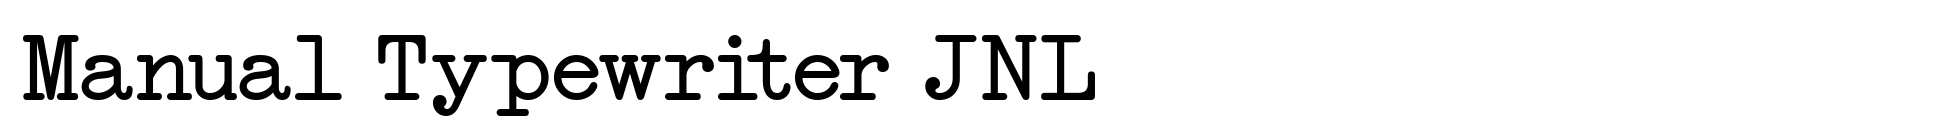 Manual Typewriter JNL